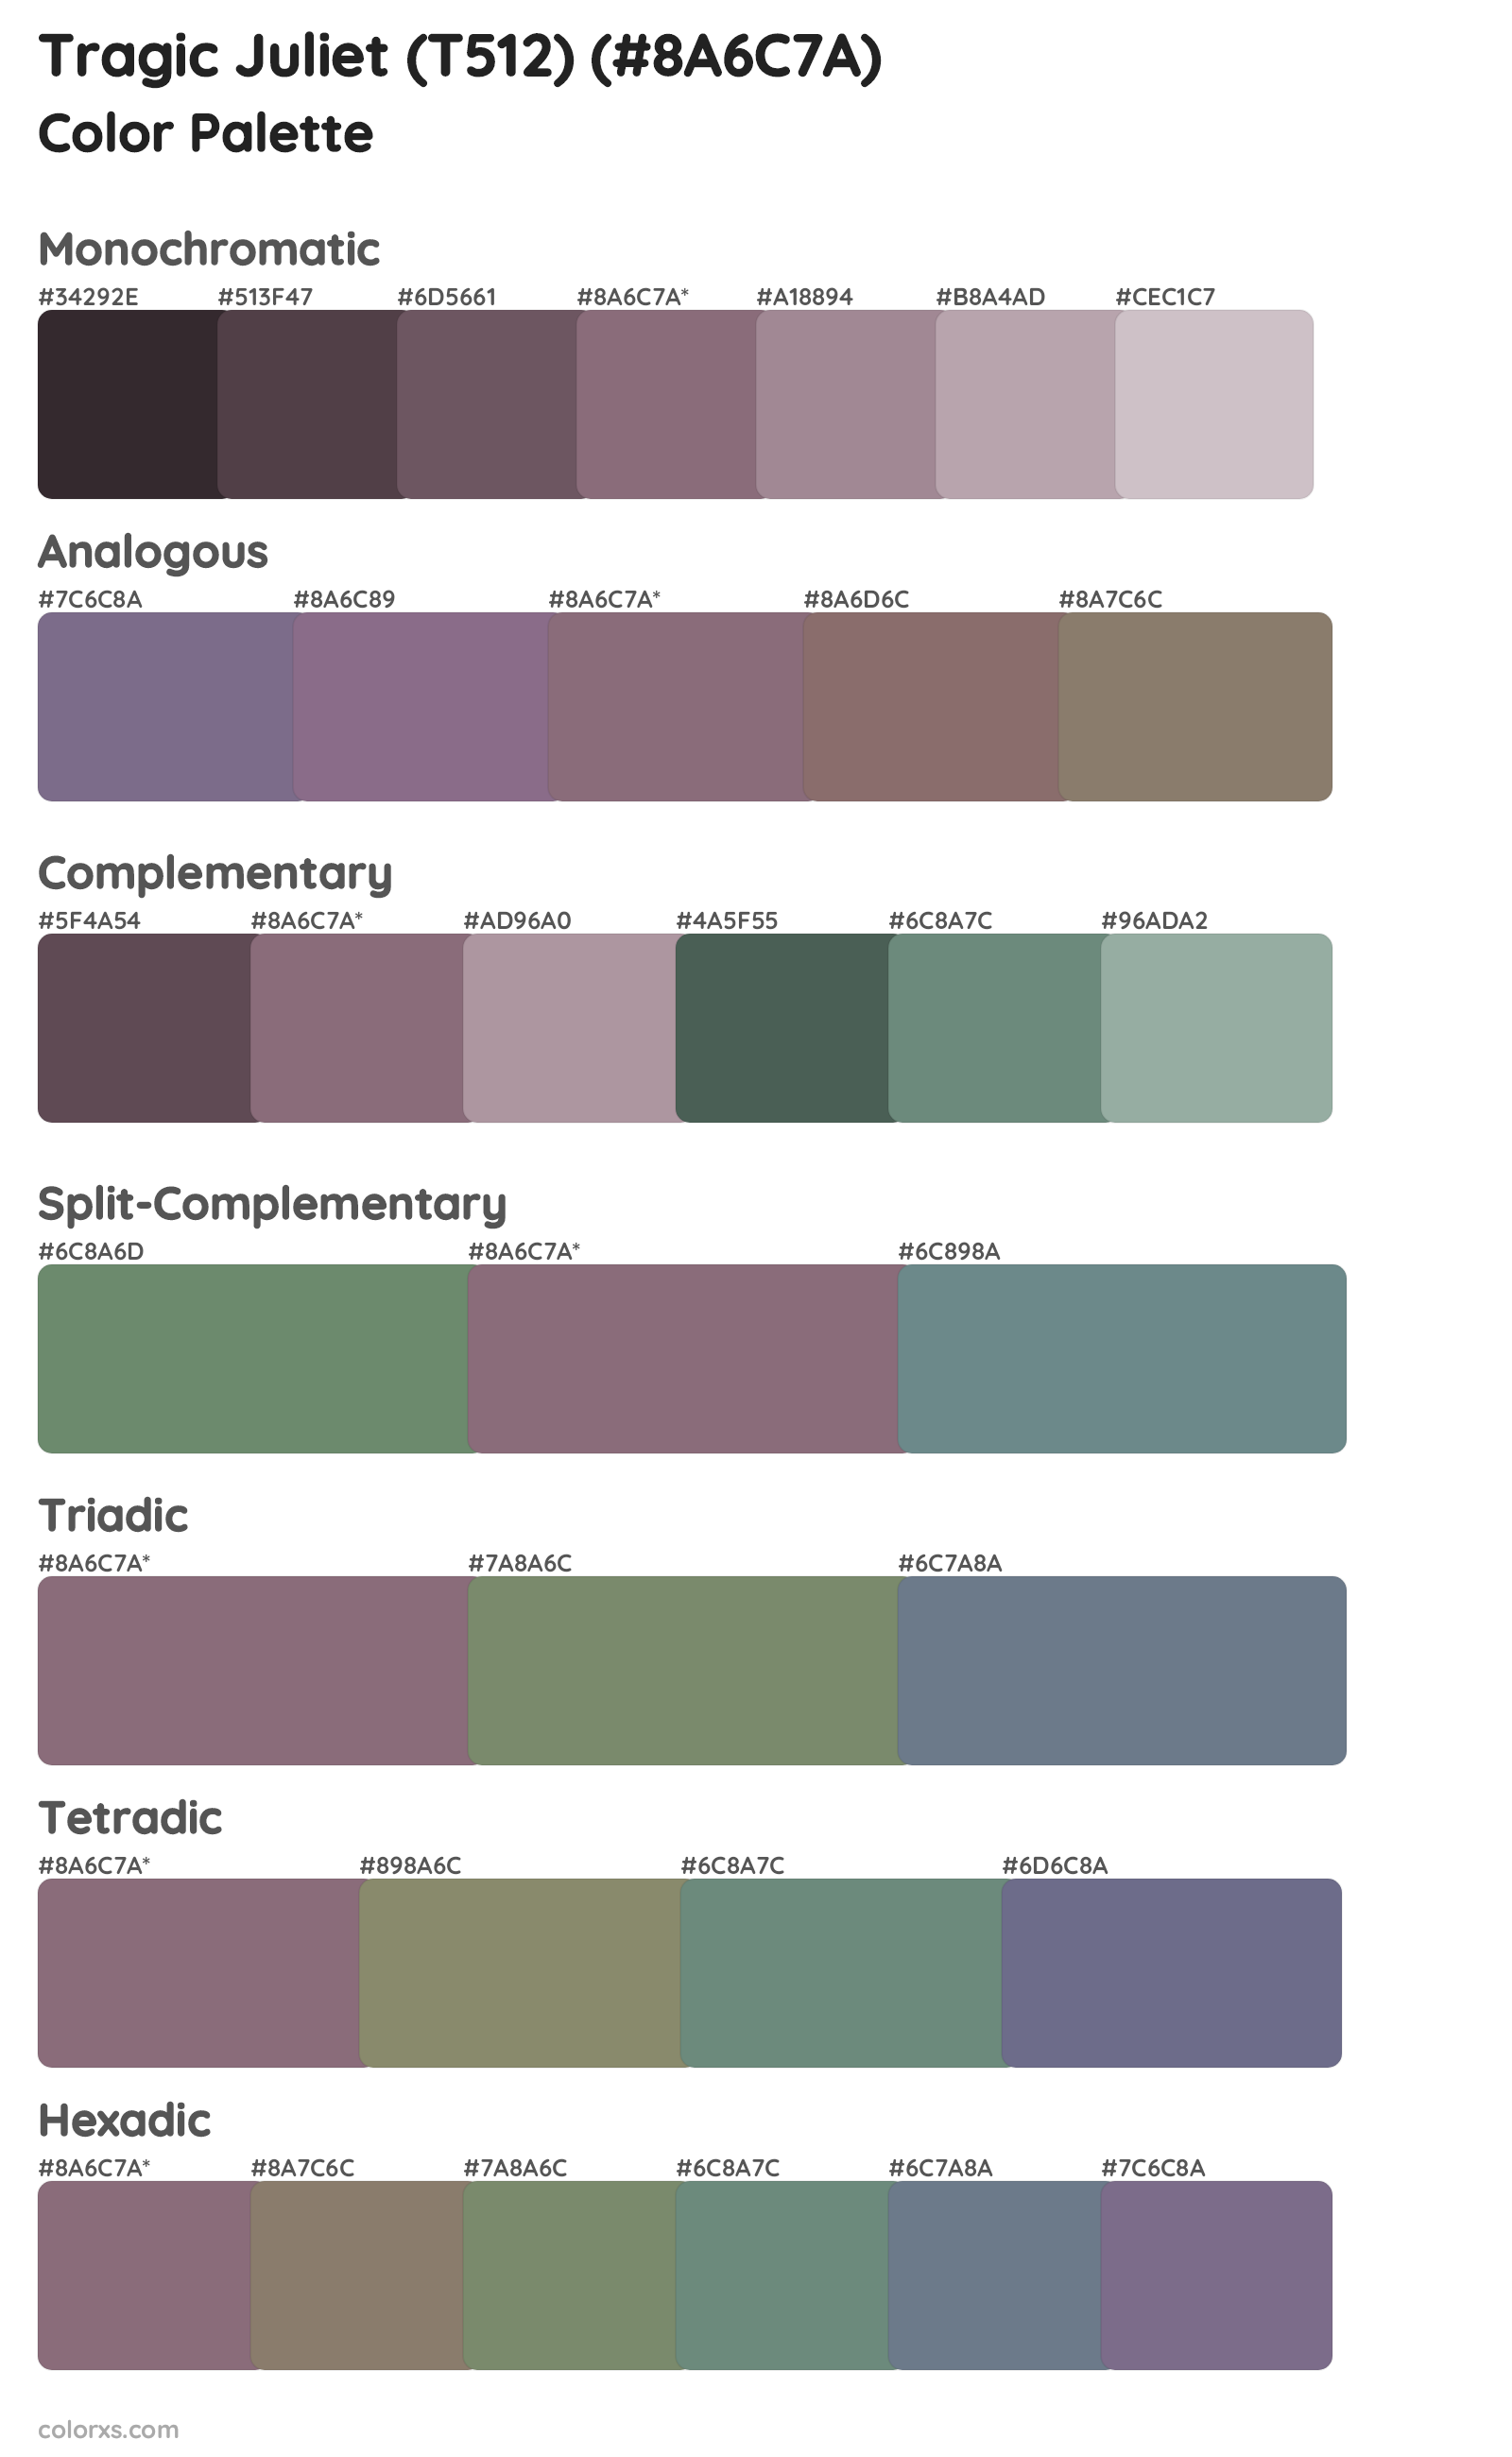 Tragic Juliet (T512) Color Scheme Palettes